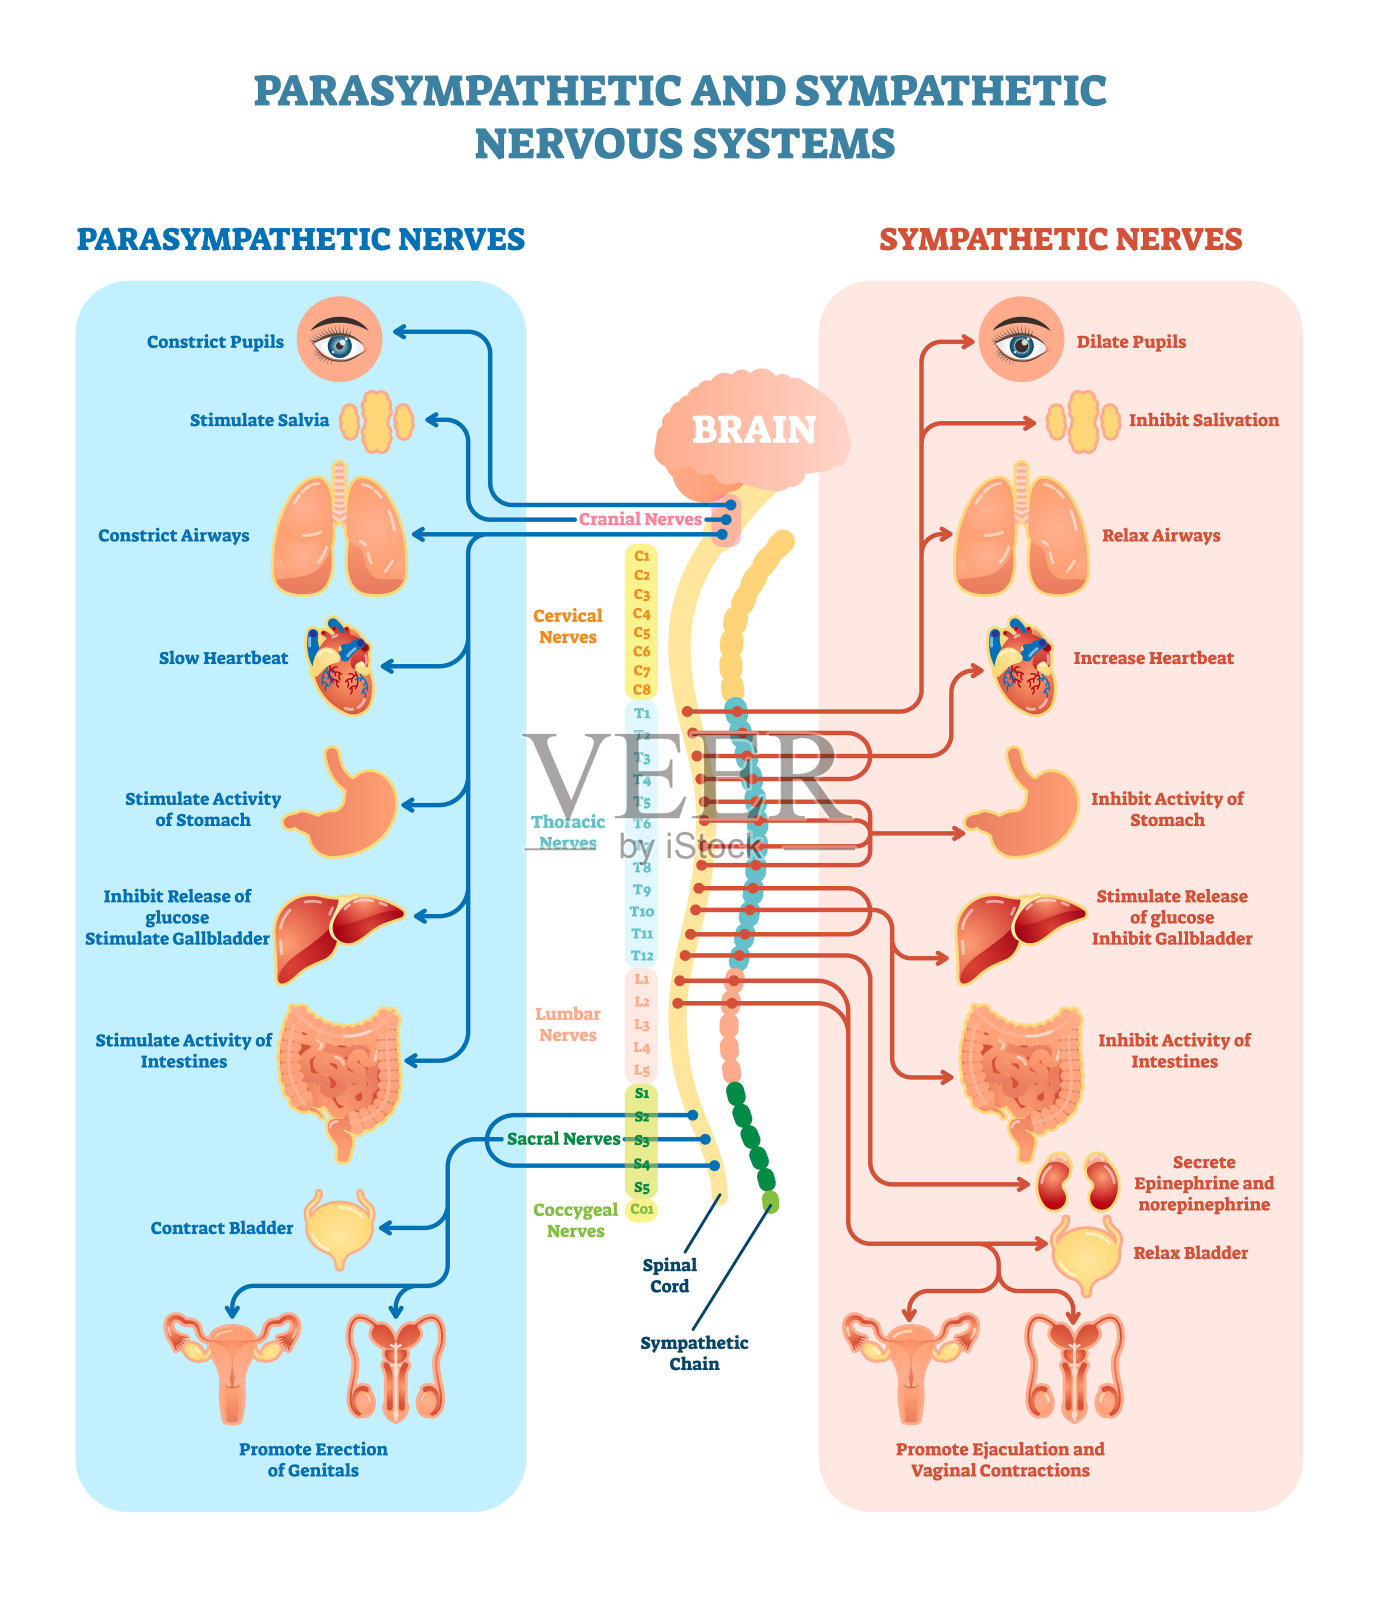 人体神经系统医学载体图解与副交感神经和交感神经以及所有相连的内脏器官。插画图片素材